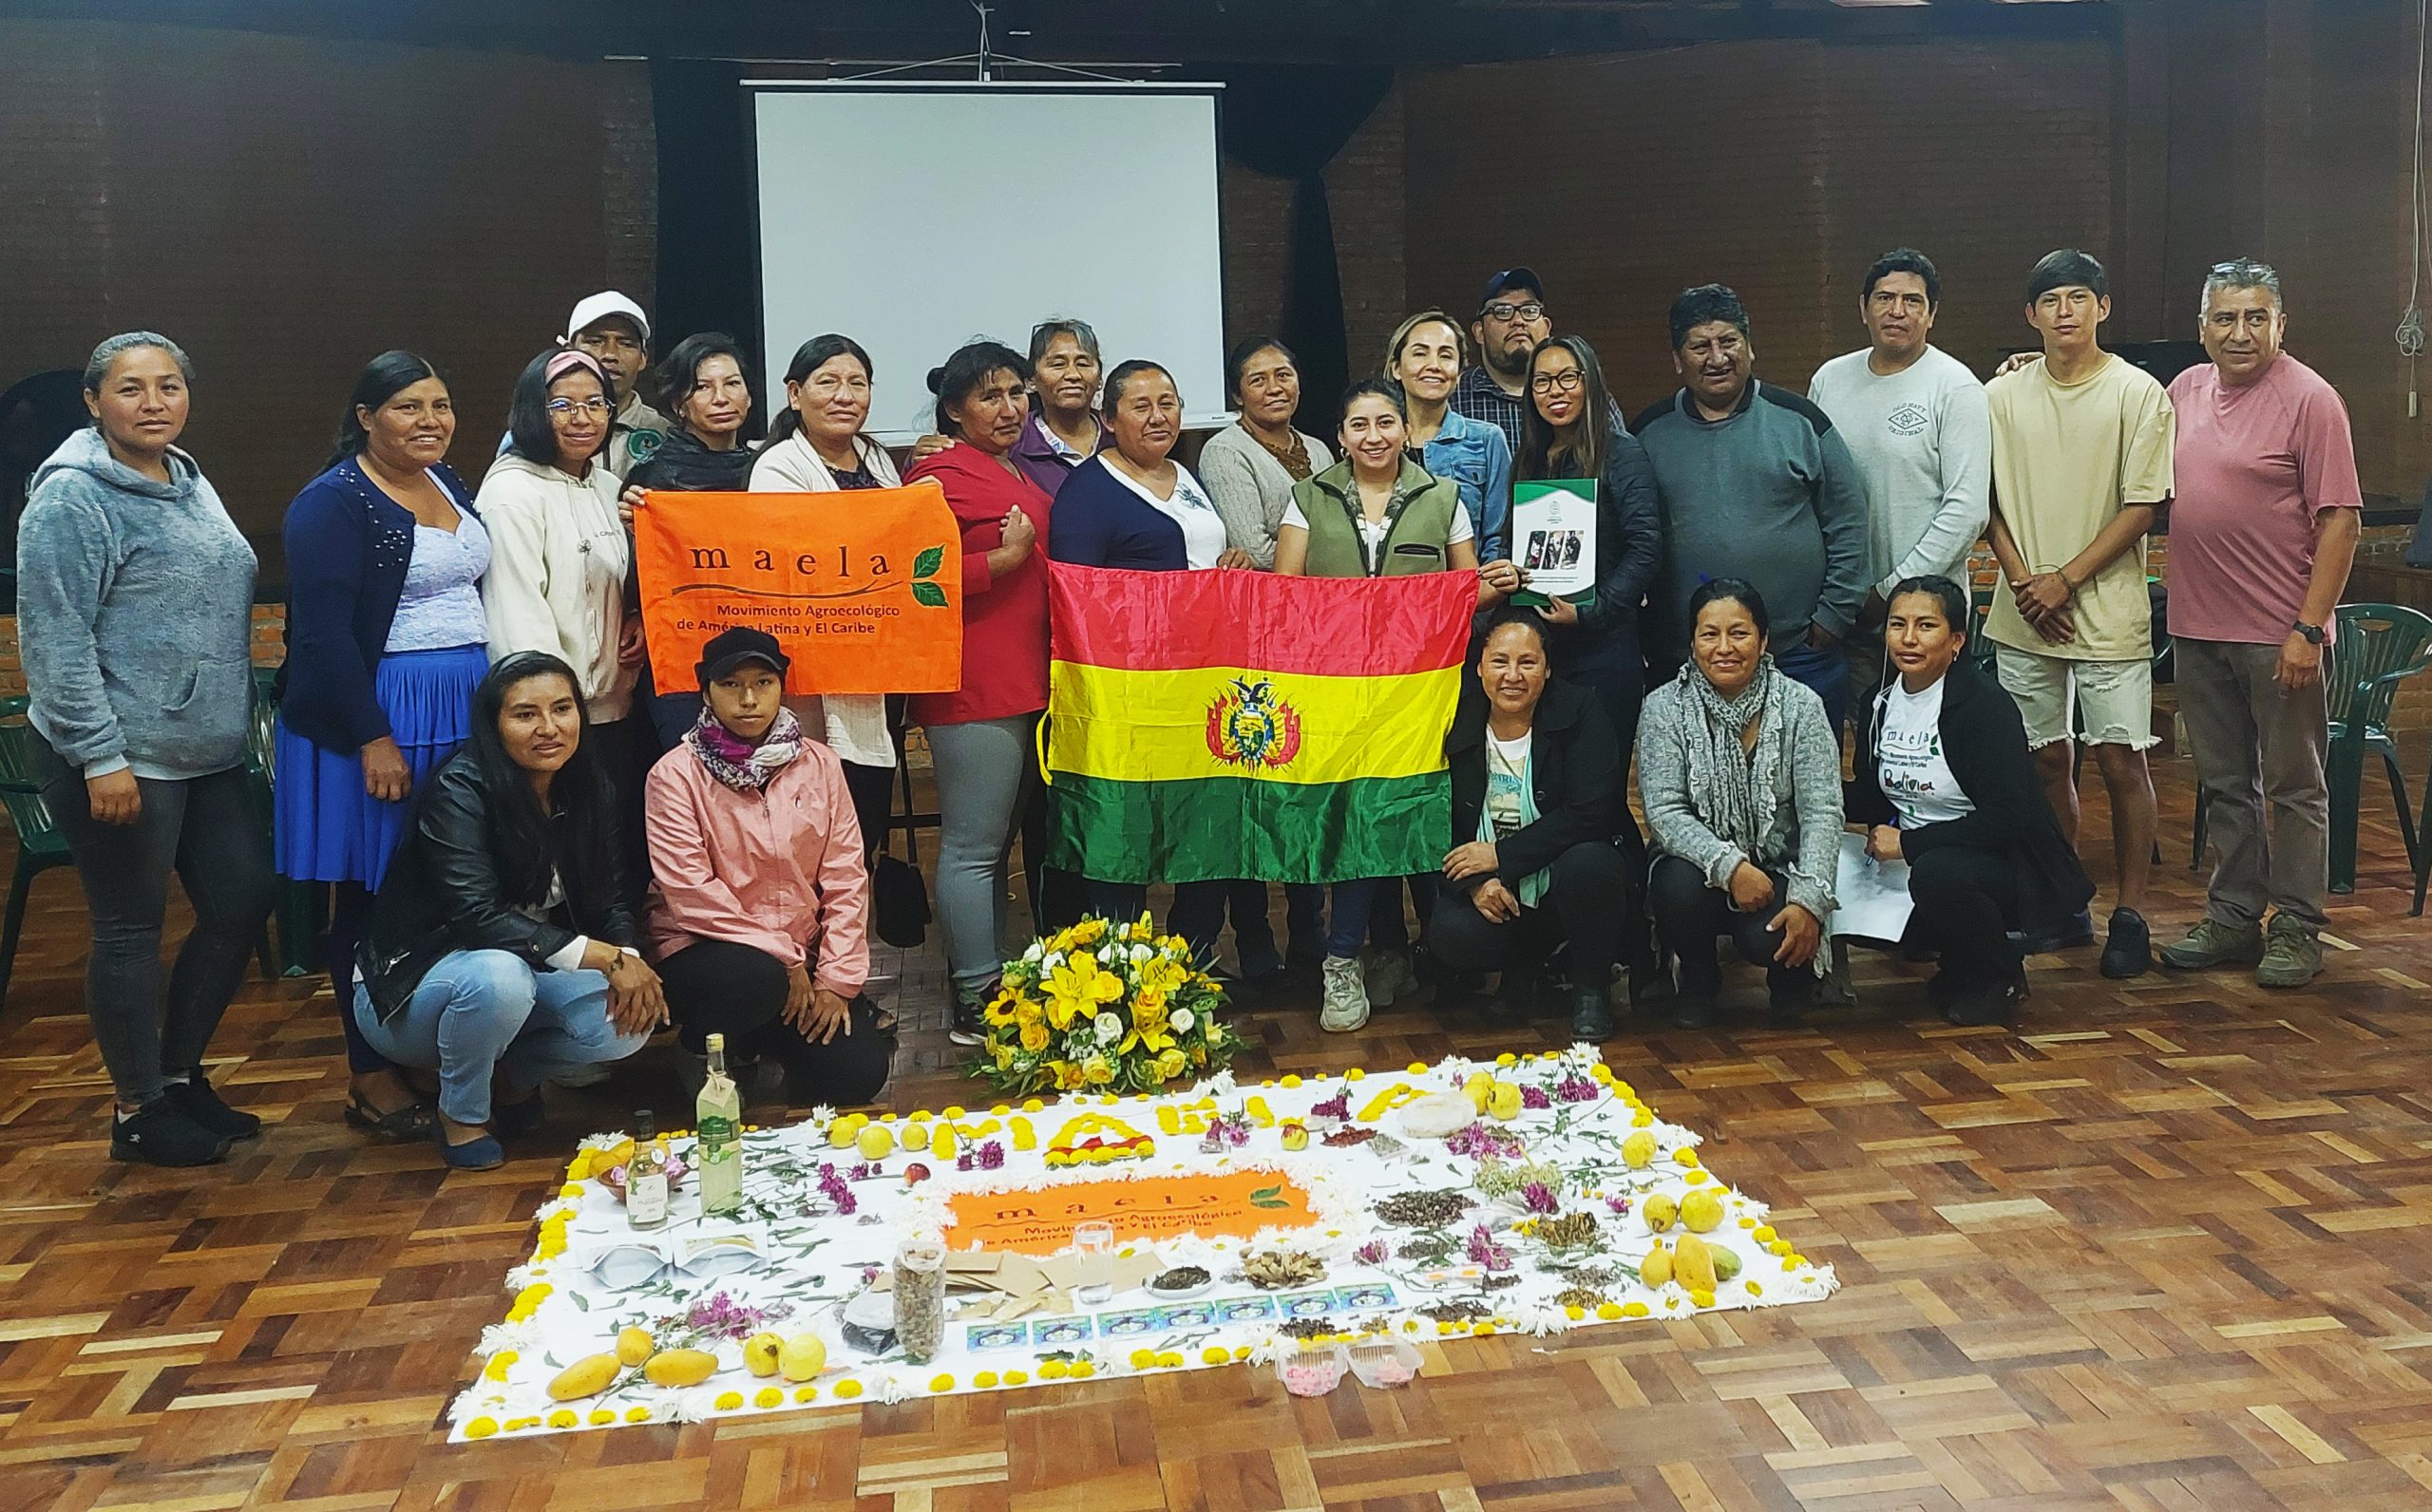 Se realizó la Asamblea Nacional del MAELA BOLIVIA en Cochabamba